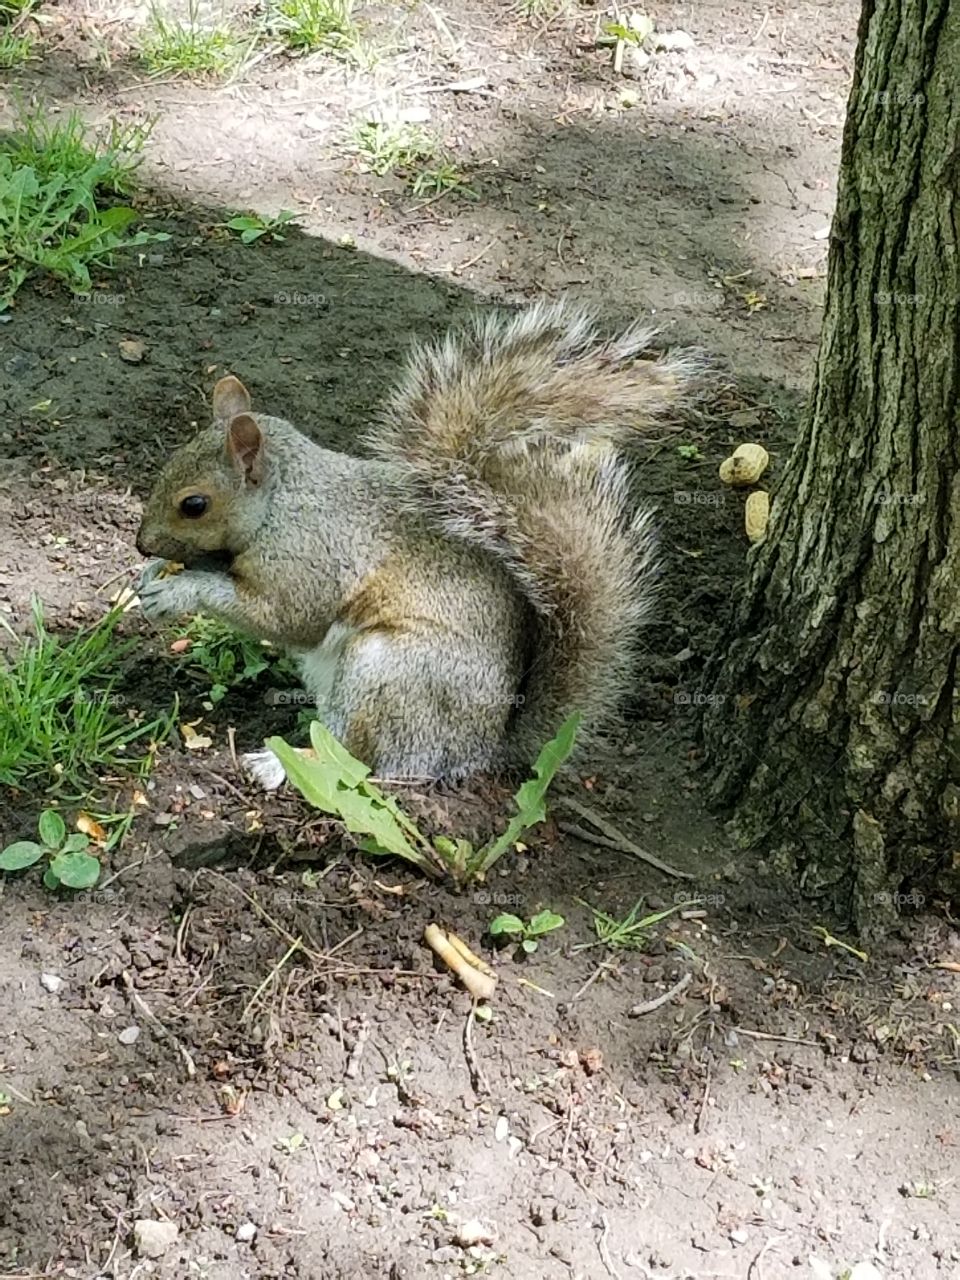 feeding the squirrel